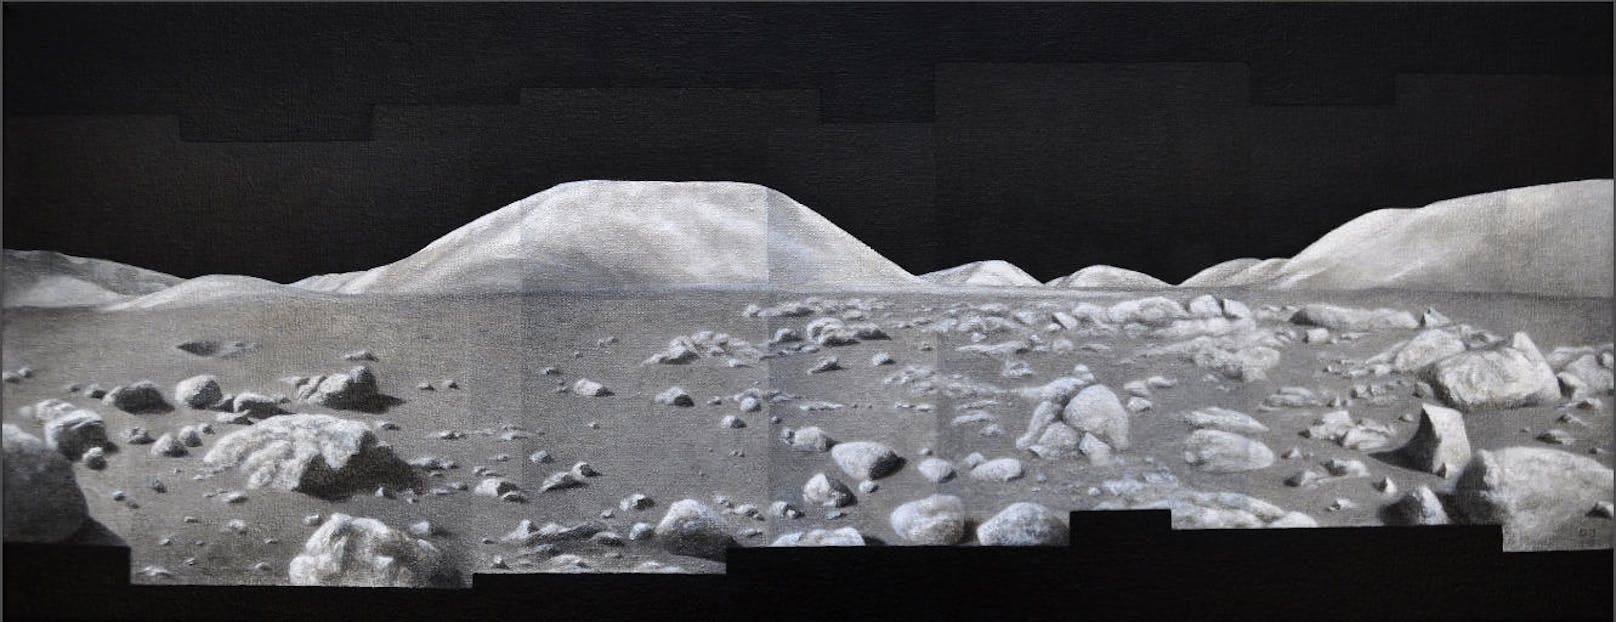 In ihrem Öl-Bild "Silvery Landscape" übernimmt die Künstlerin die klassische Kasten-Struktur, die die NASA auch für ihre Mondaufnahme verwendet. (c) Dona Jalufka